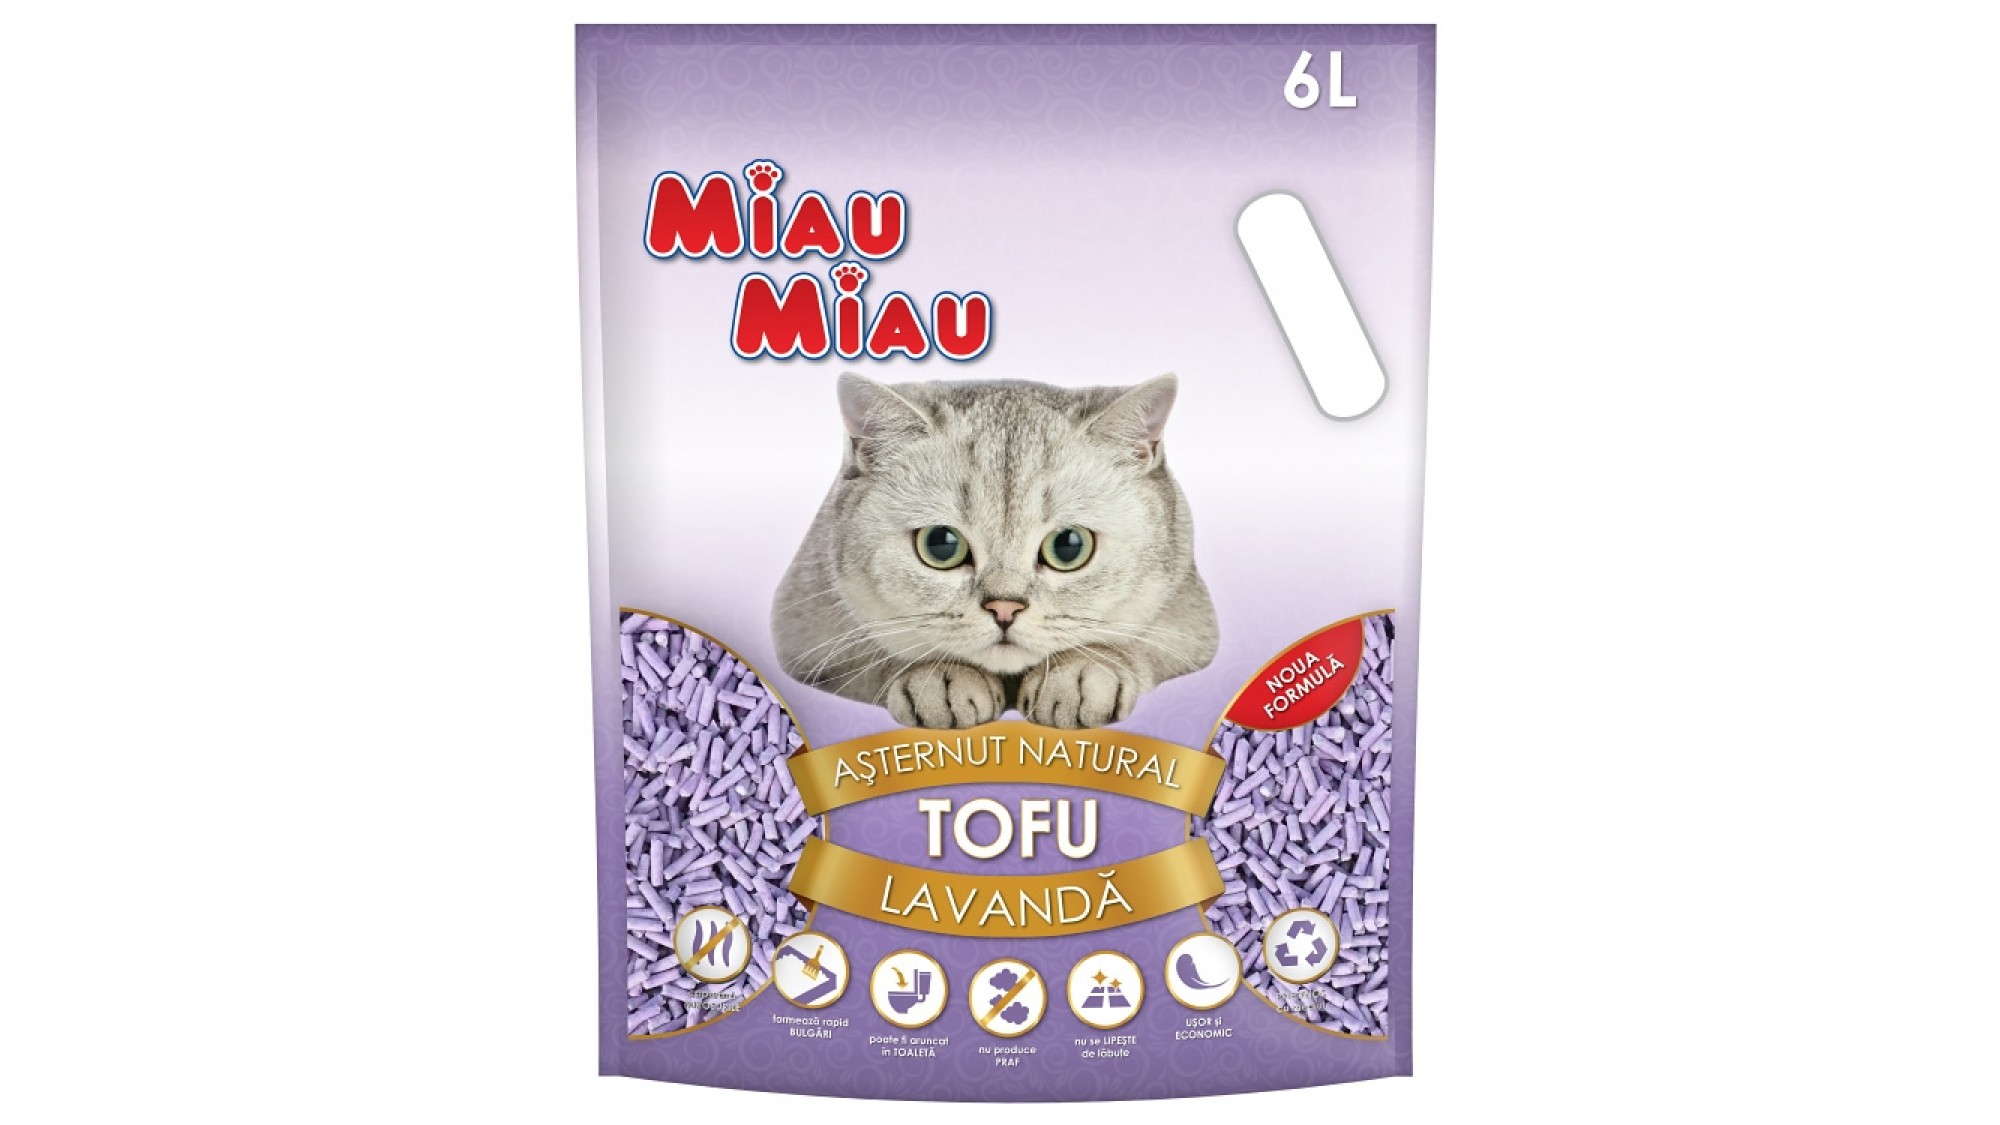 Asternut Natural Din Tofu Pentru Pisici Miau Miau cu lavanda 6 L Miau Miau imagine 2022